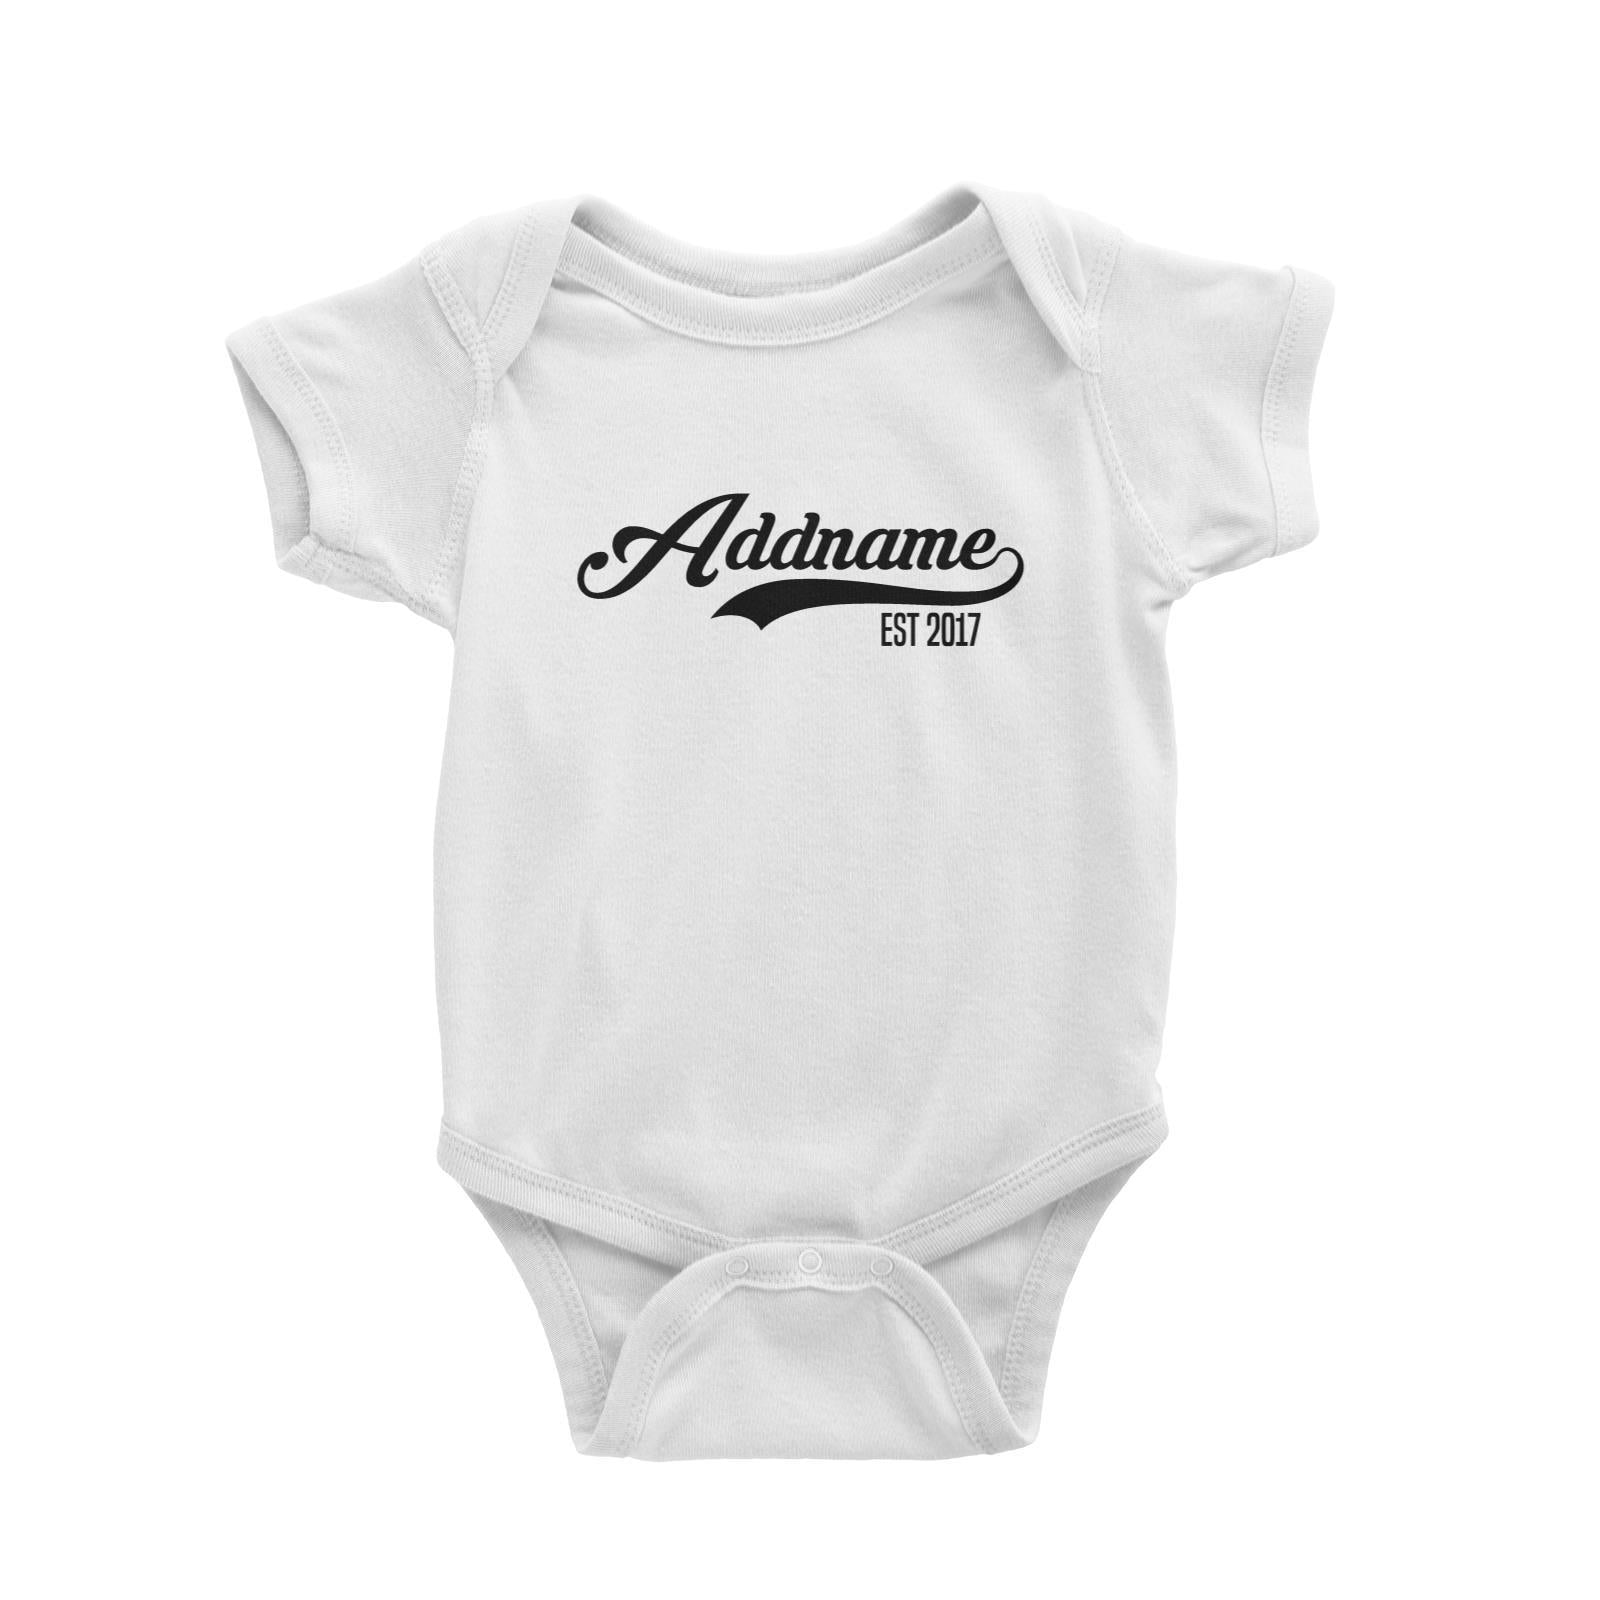 Retro Addname EST 2017 Baby Romper Personalizable Designs Basic Newborn